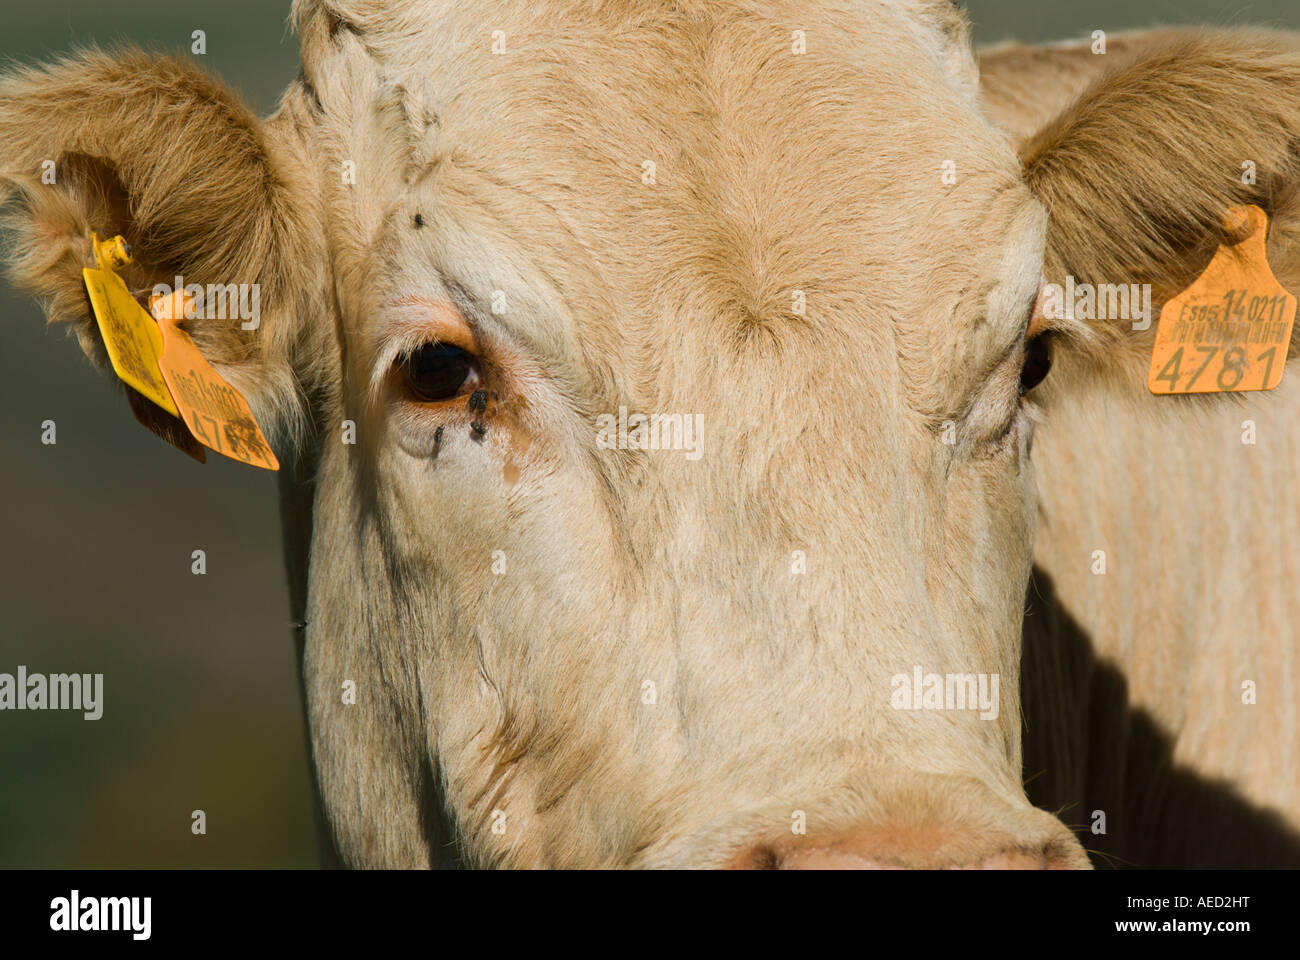 Portrait de vache, Espagne Banque D'Images